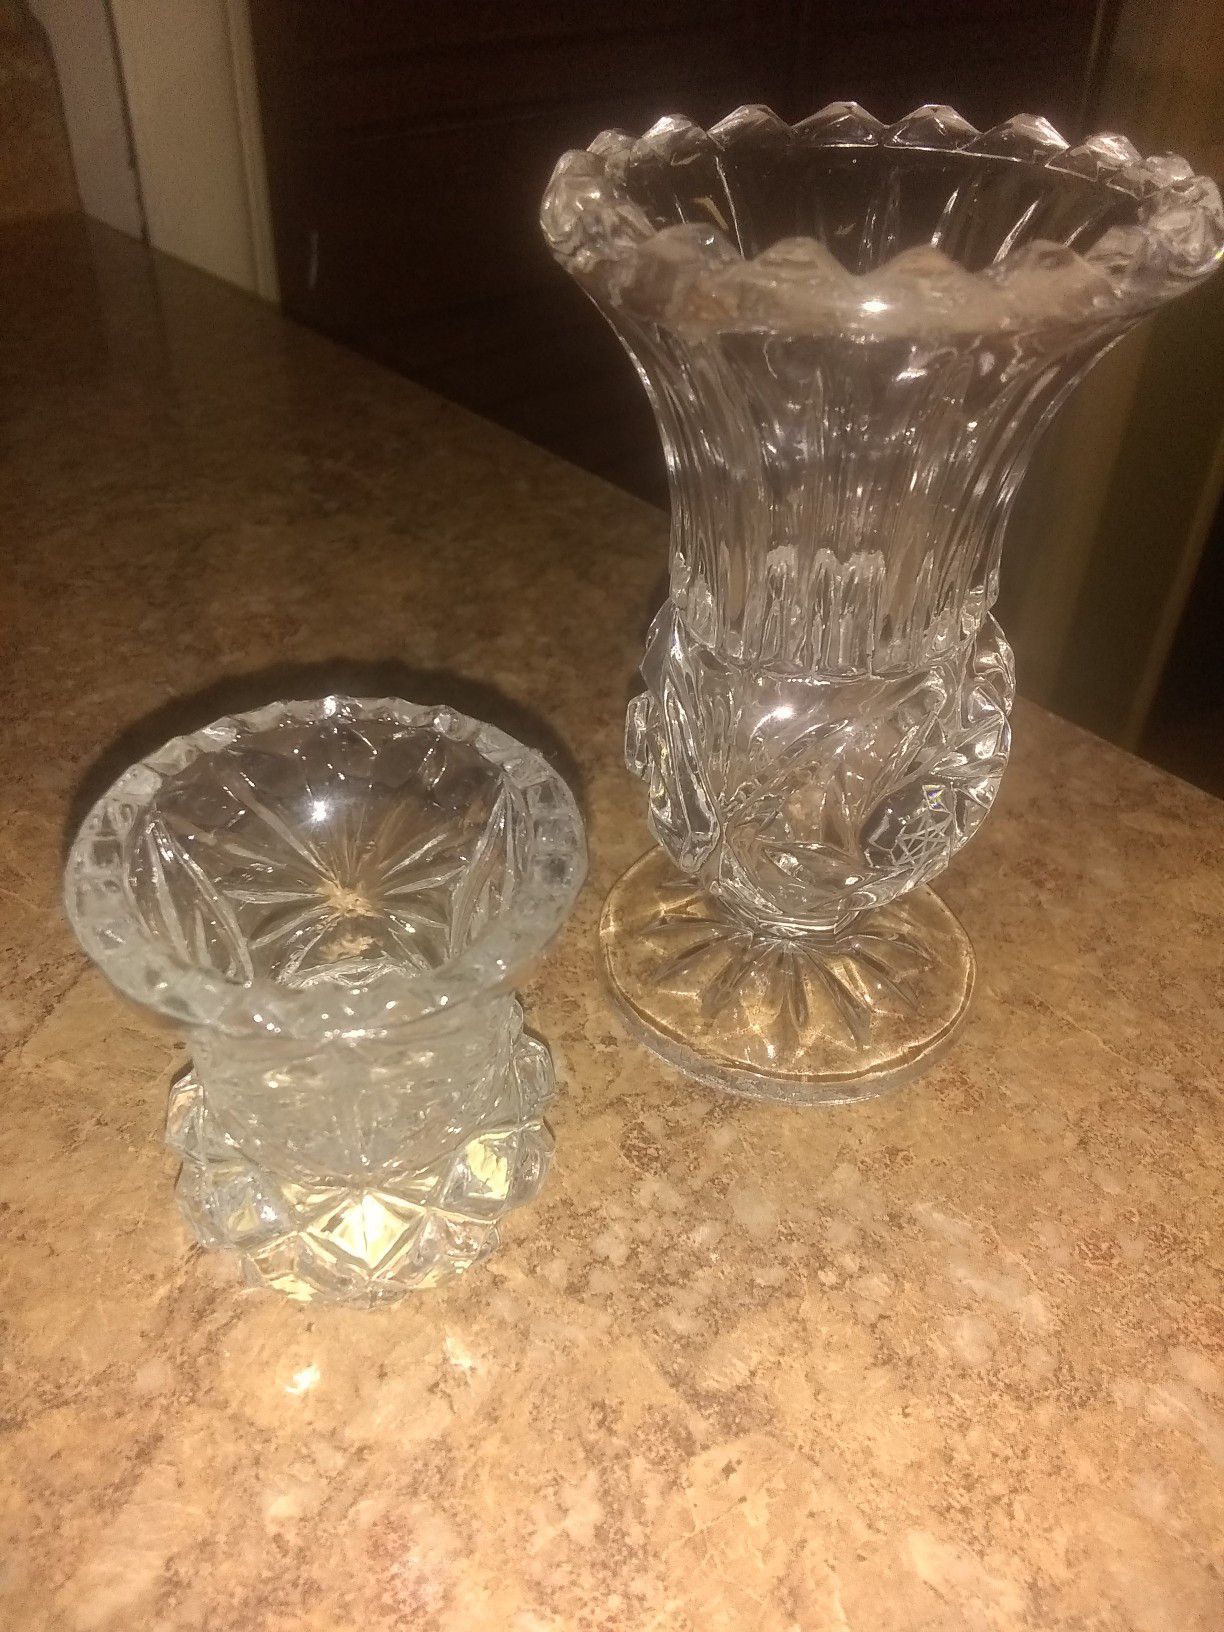 4" Crystal Bud Vase and toothpick vase